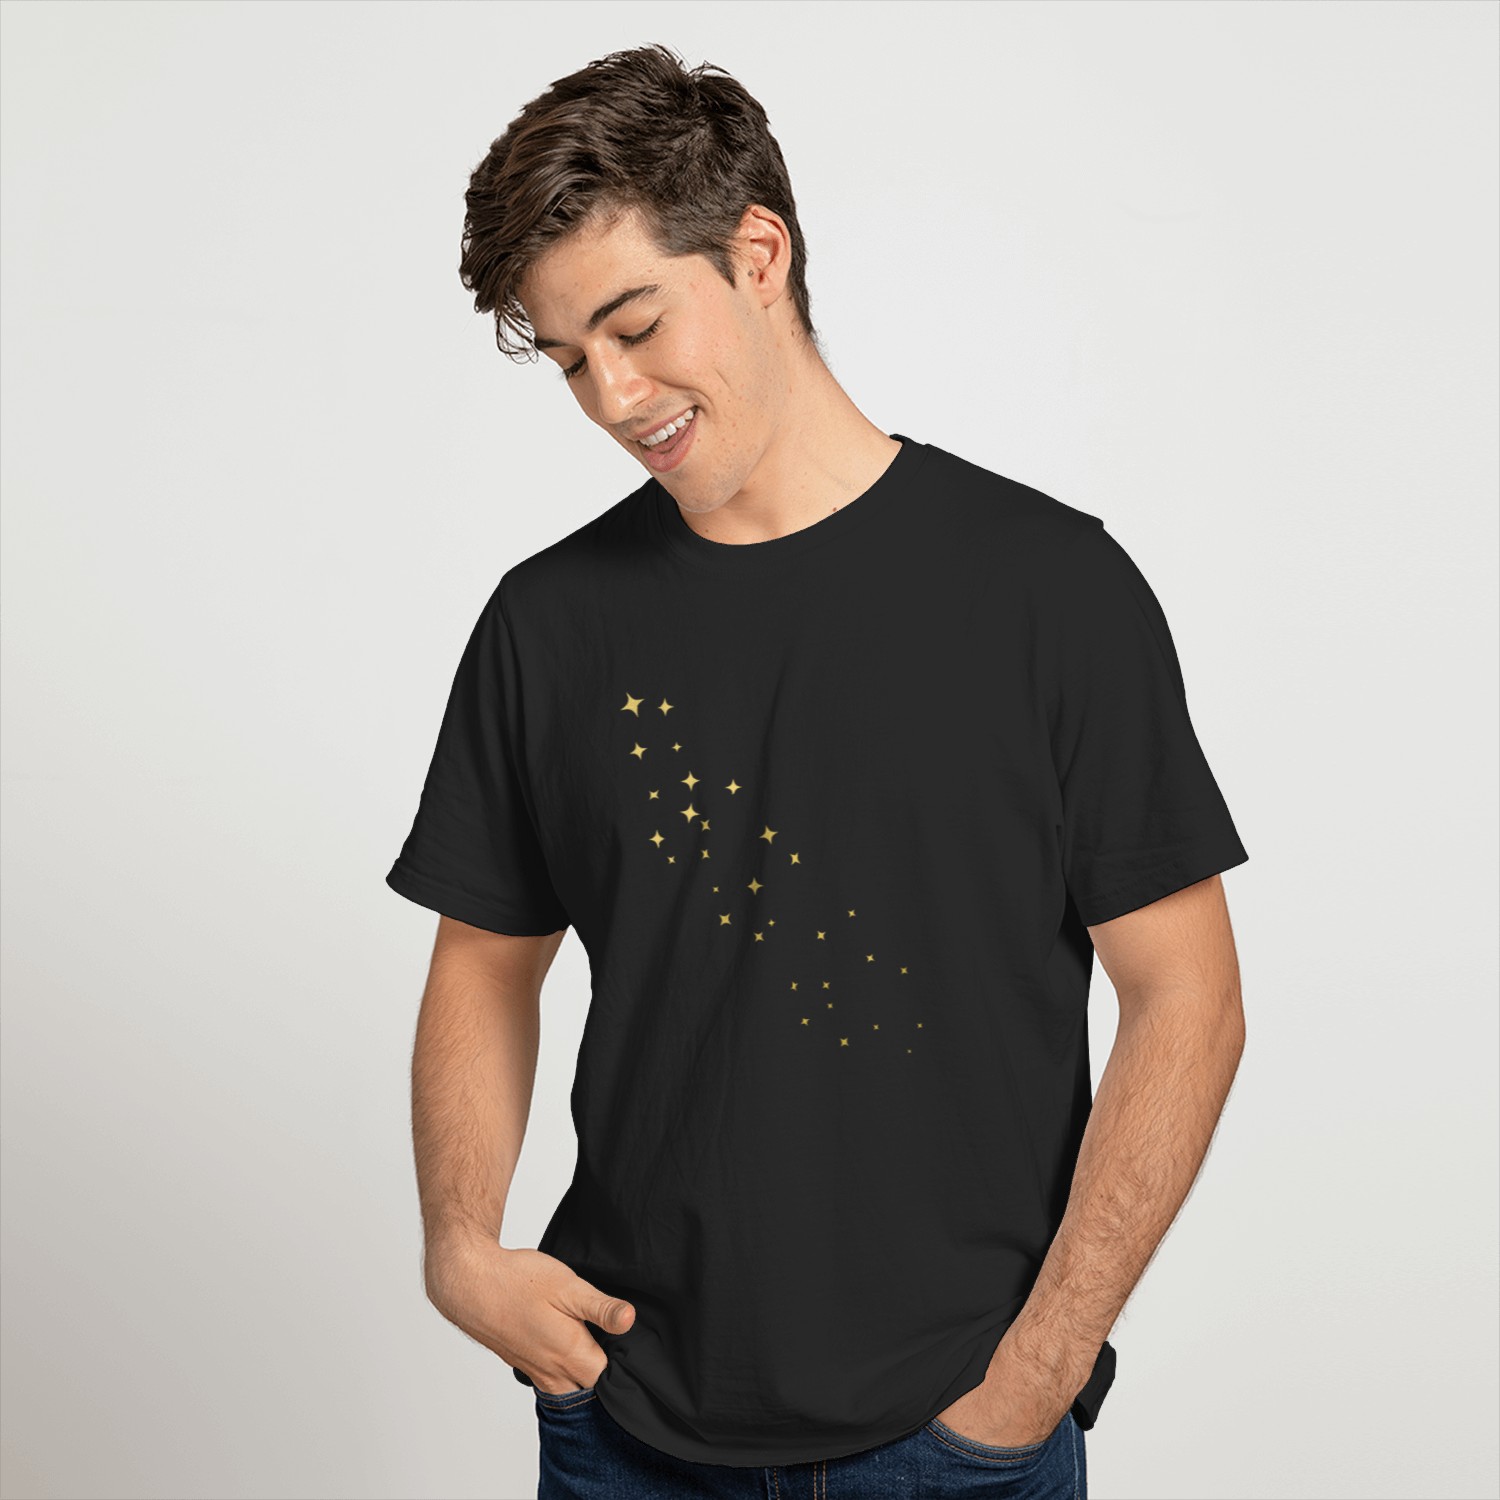 Golden stars T-shirt